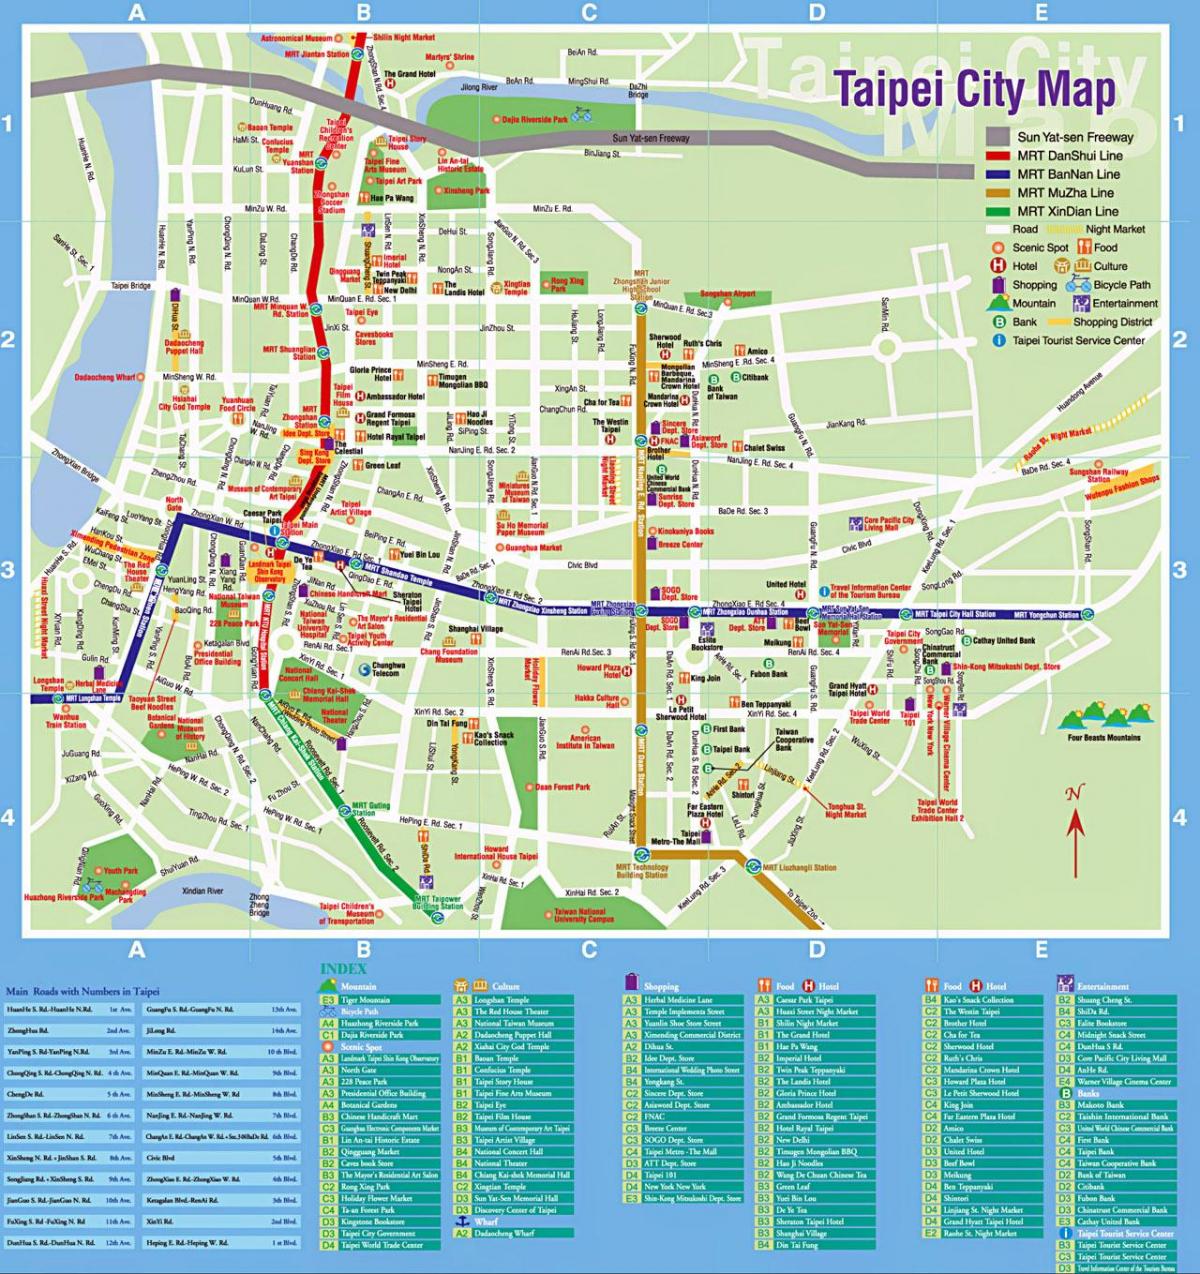 Taipei bas peta laluan